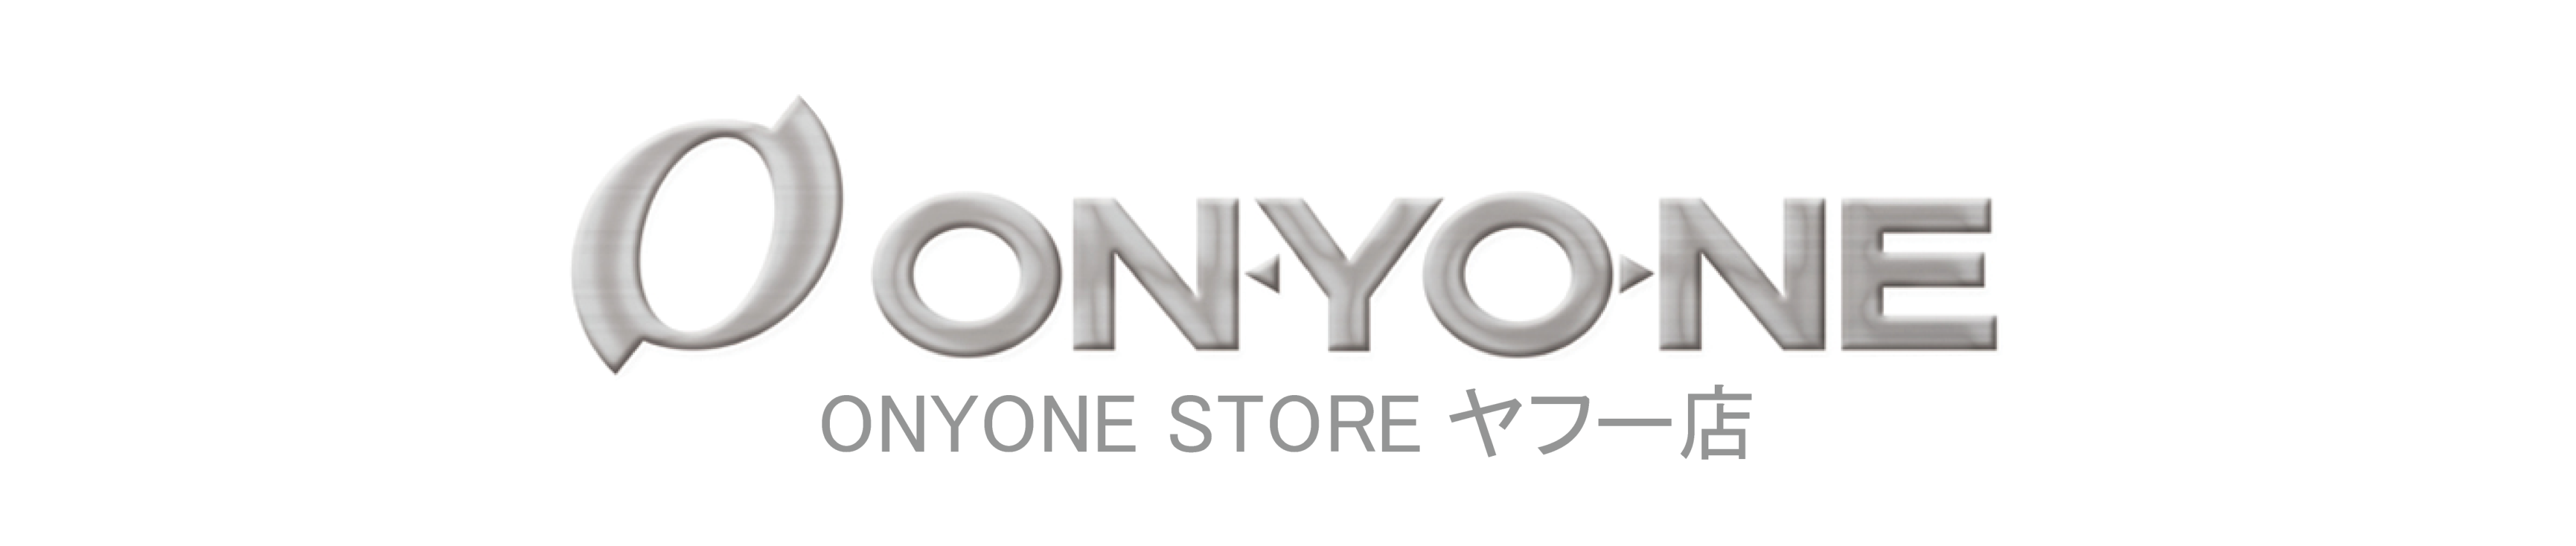 ONYONE STORE ヤフー店 ヘッダー画像